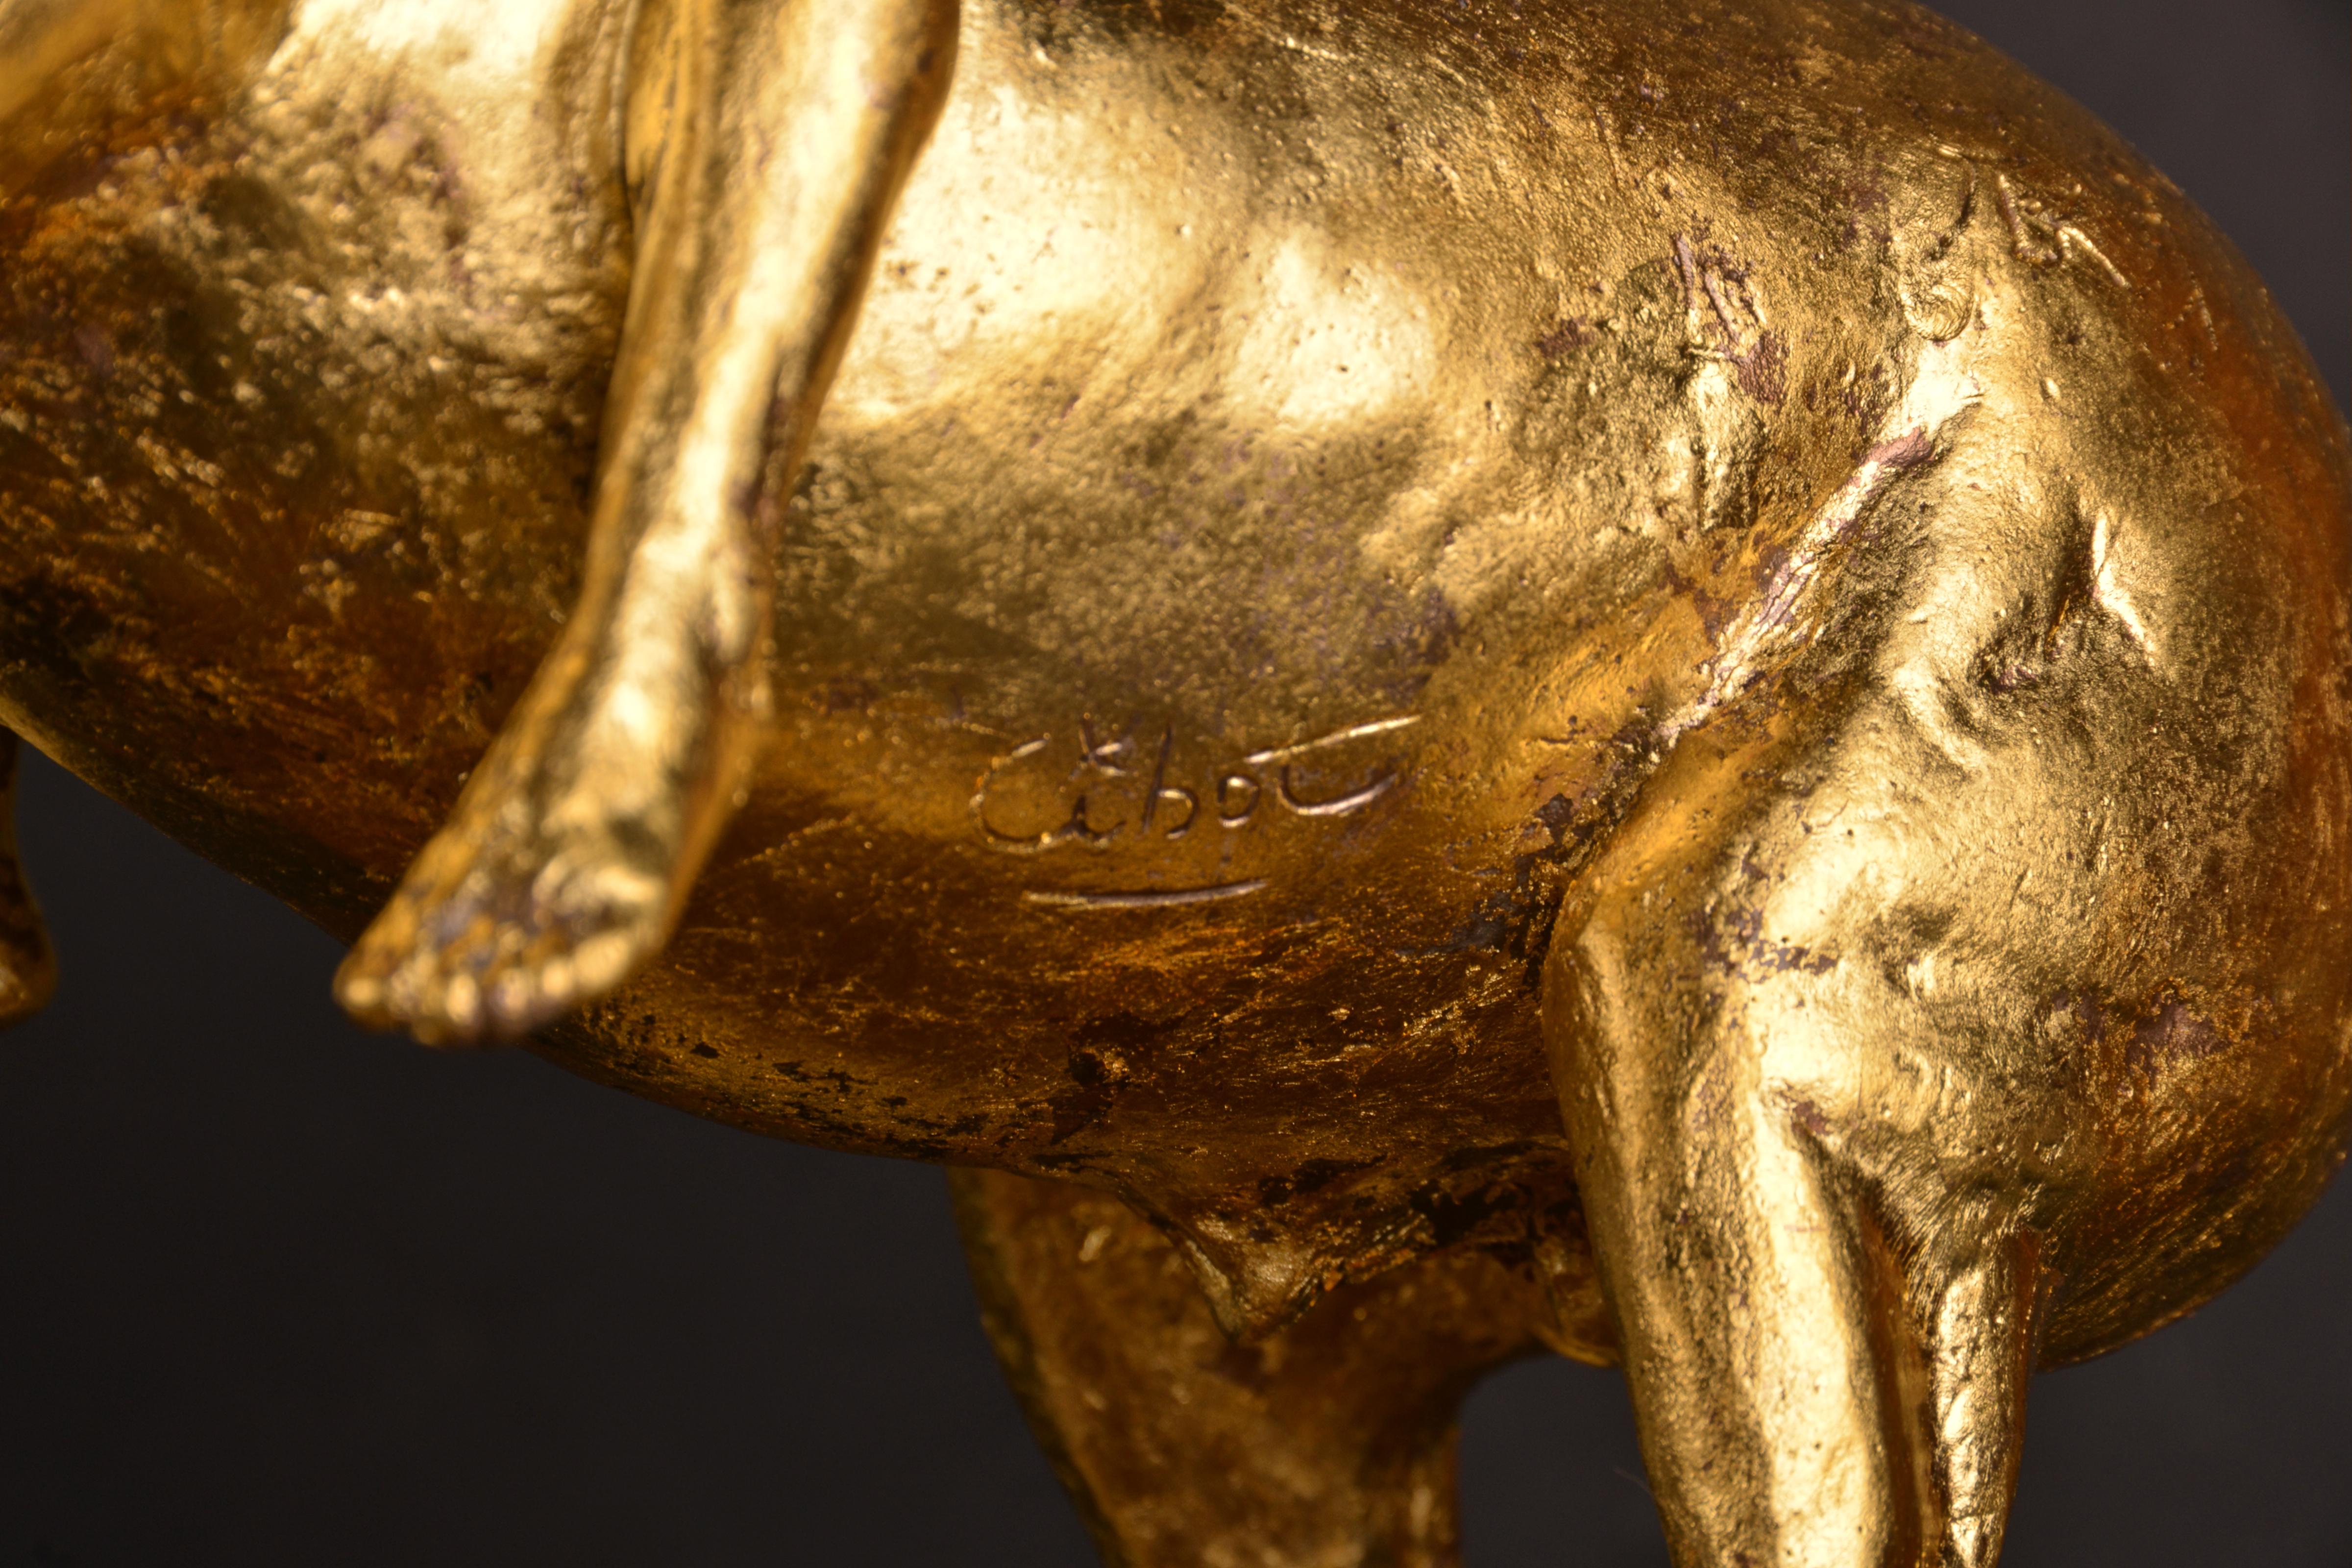 Geboren 1960 in einer Künstlerfamilie, die Bronzen der italienischen Renaissance sammelte, war die Bildhauerei schon immer ein Teil des Lebensumfelds von Elisabeth Cibot. Während ihres Studiums an der Ecole Nationale Superieure des Beaux-Arts in